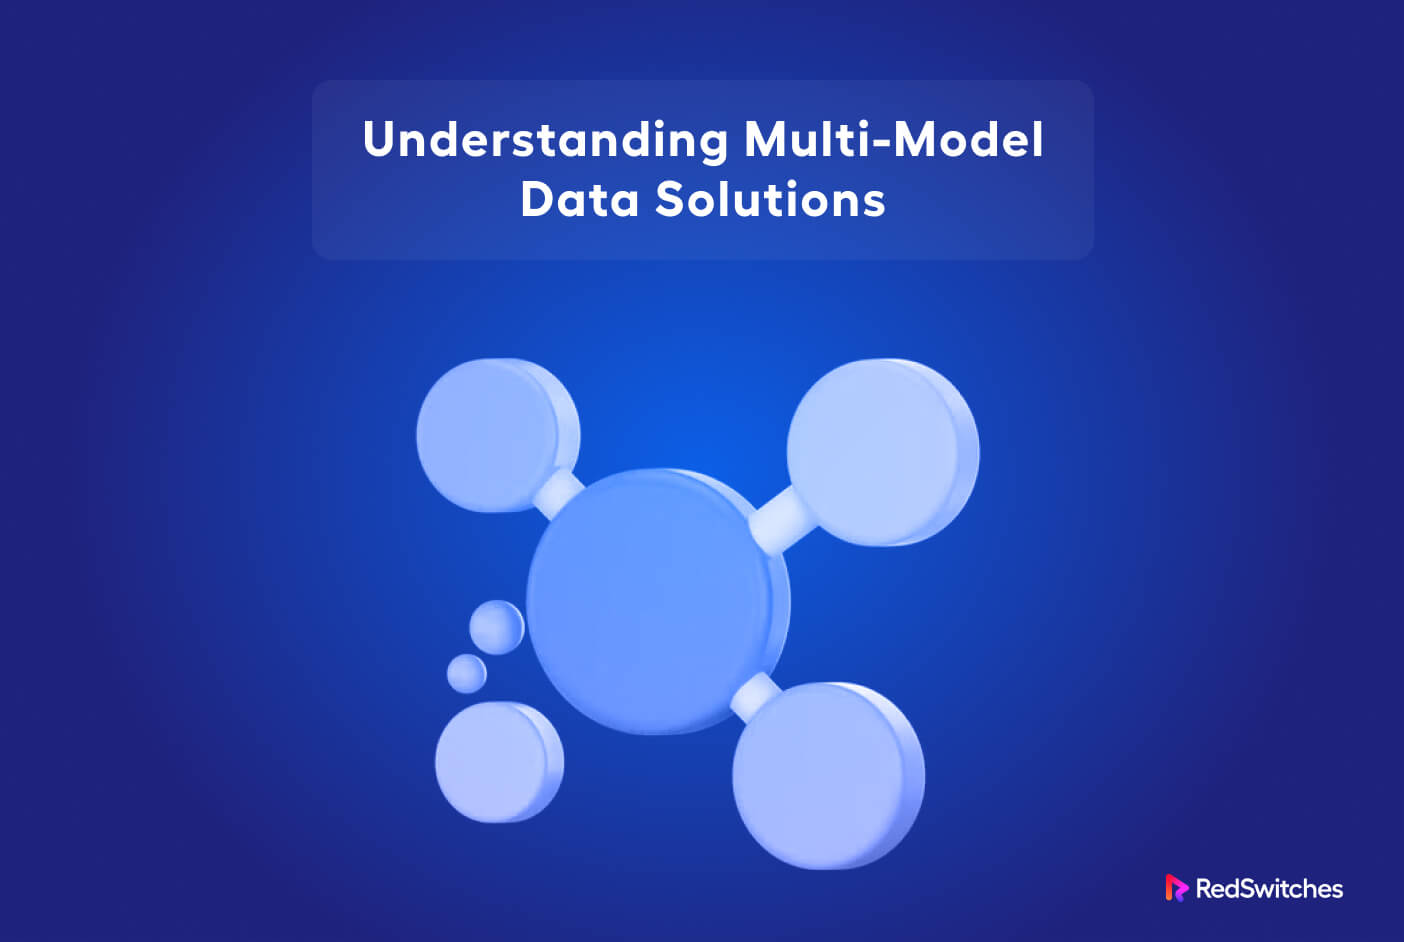 Multi model databases